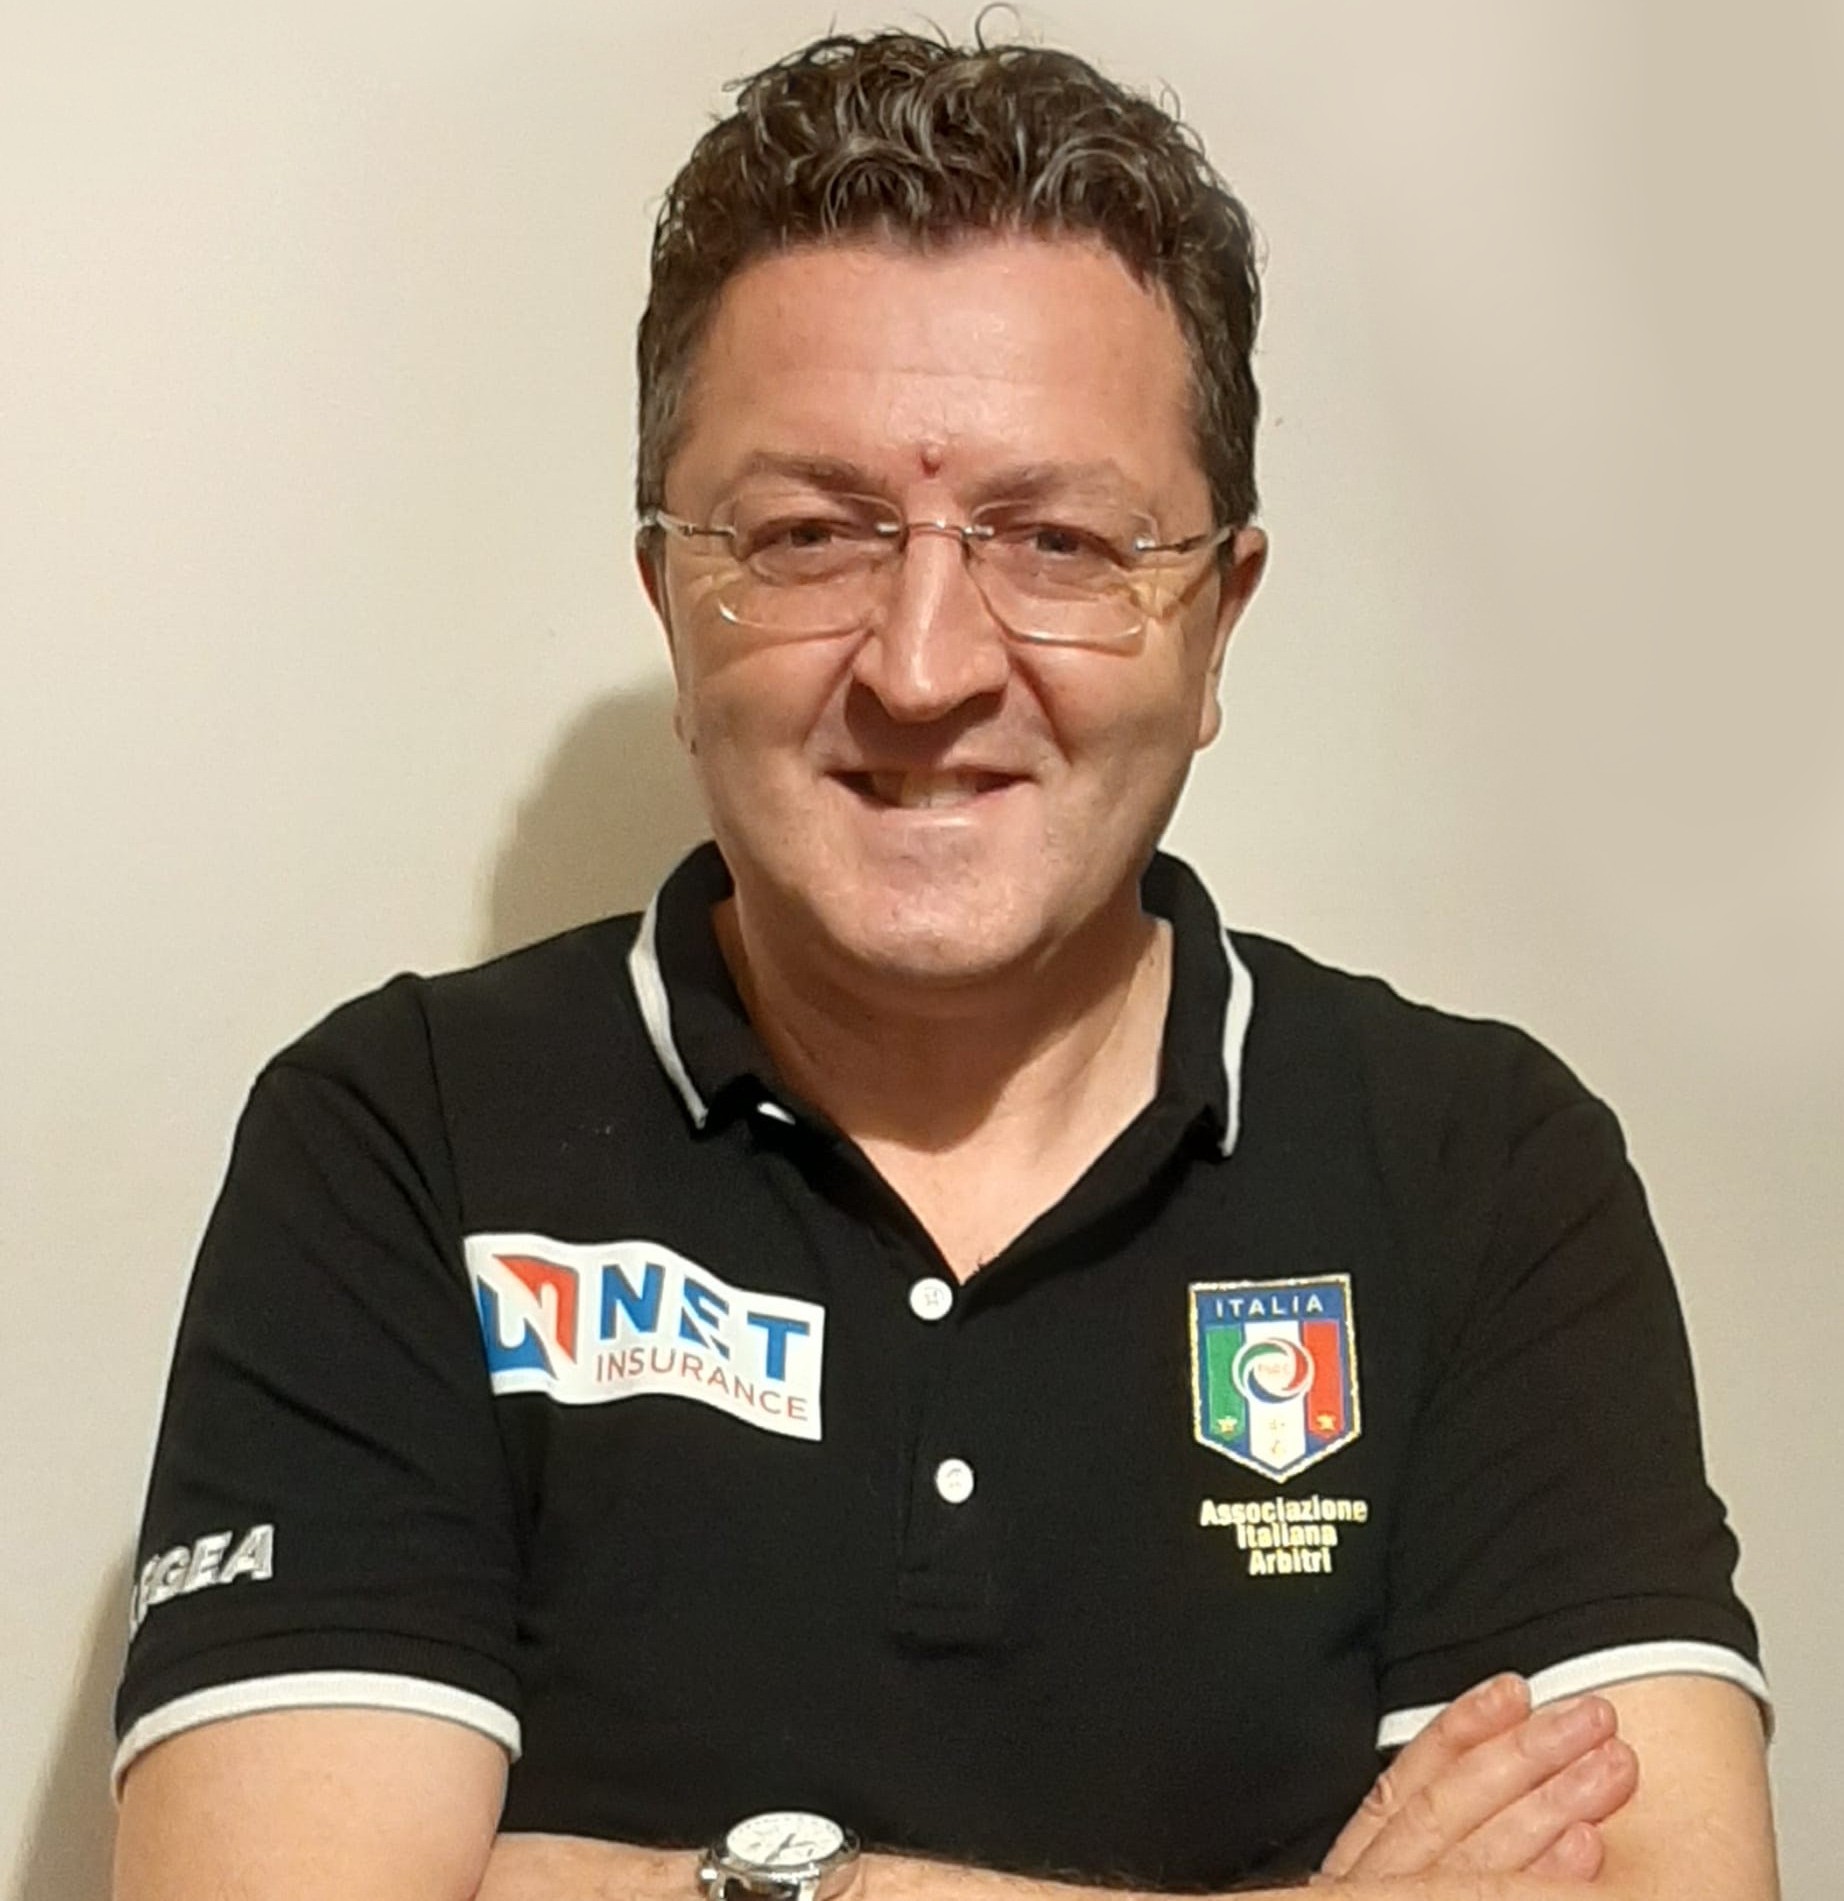 Giorgio Santi